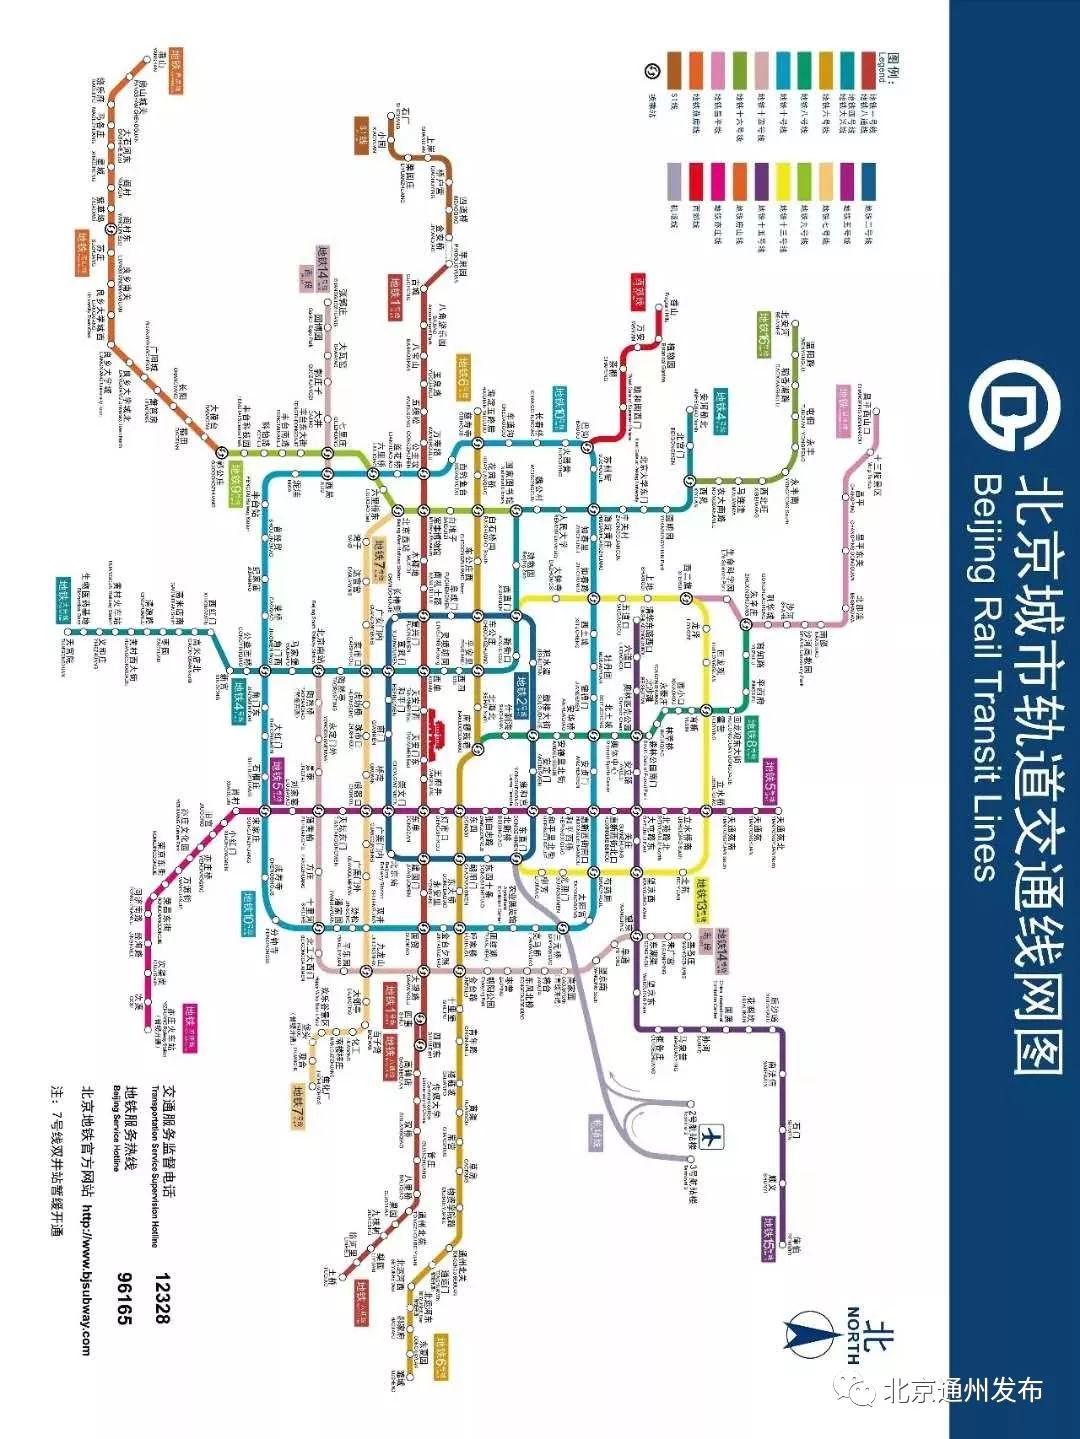 最新版北京地铁线路图 史上最全首末车时刻表来啦!